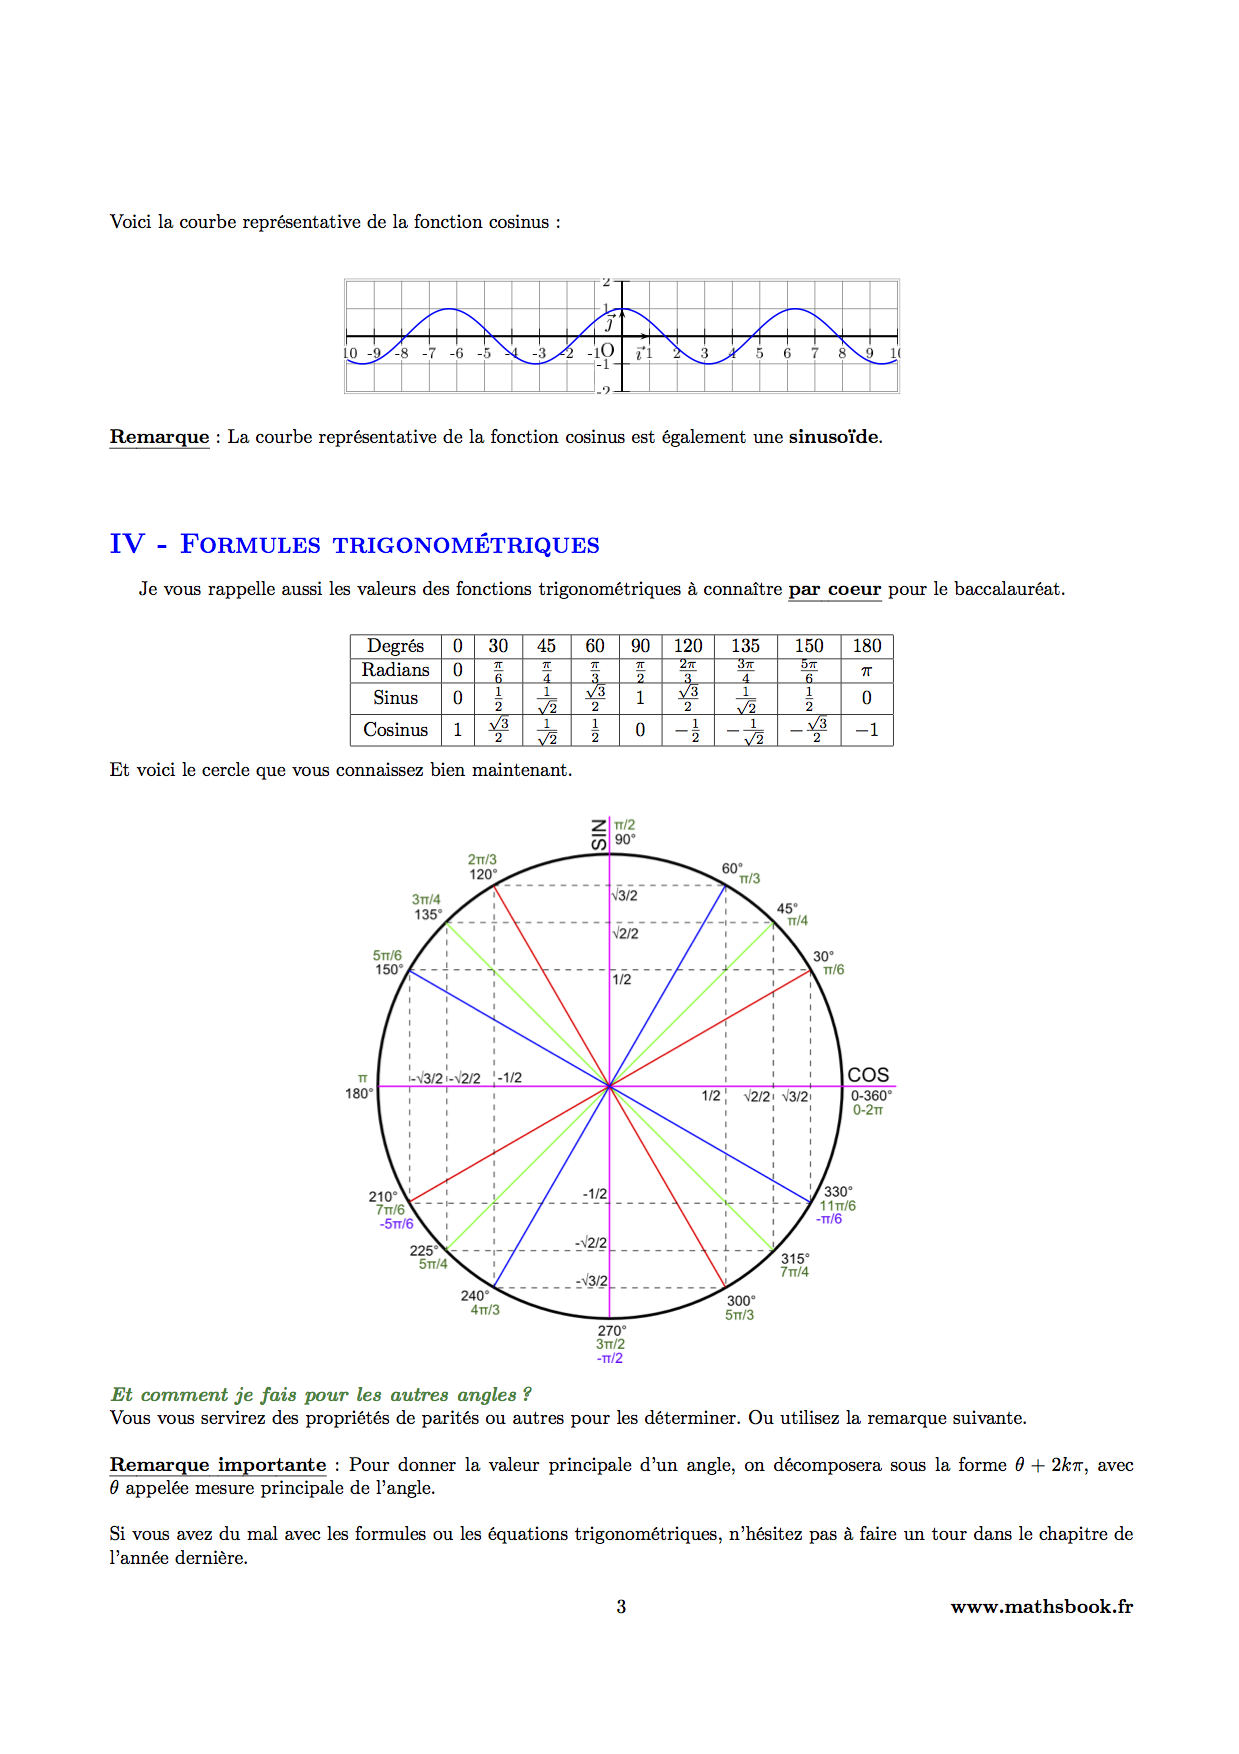 fonction cosinus proprietes et formules trigonometriques